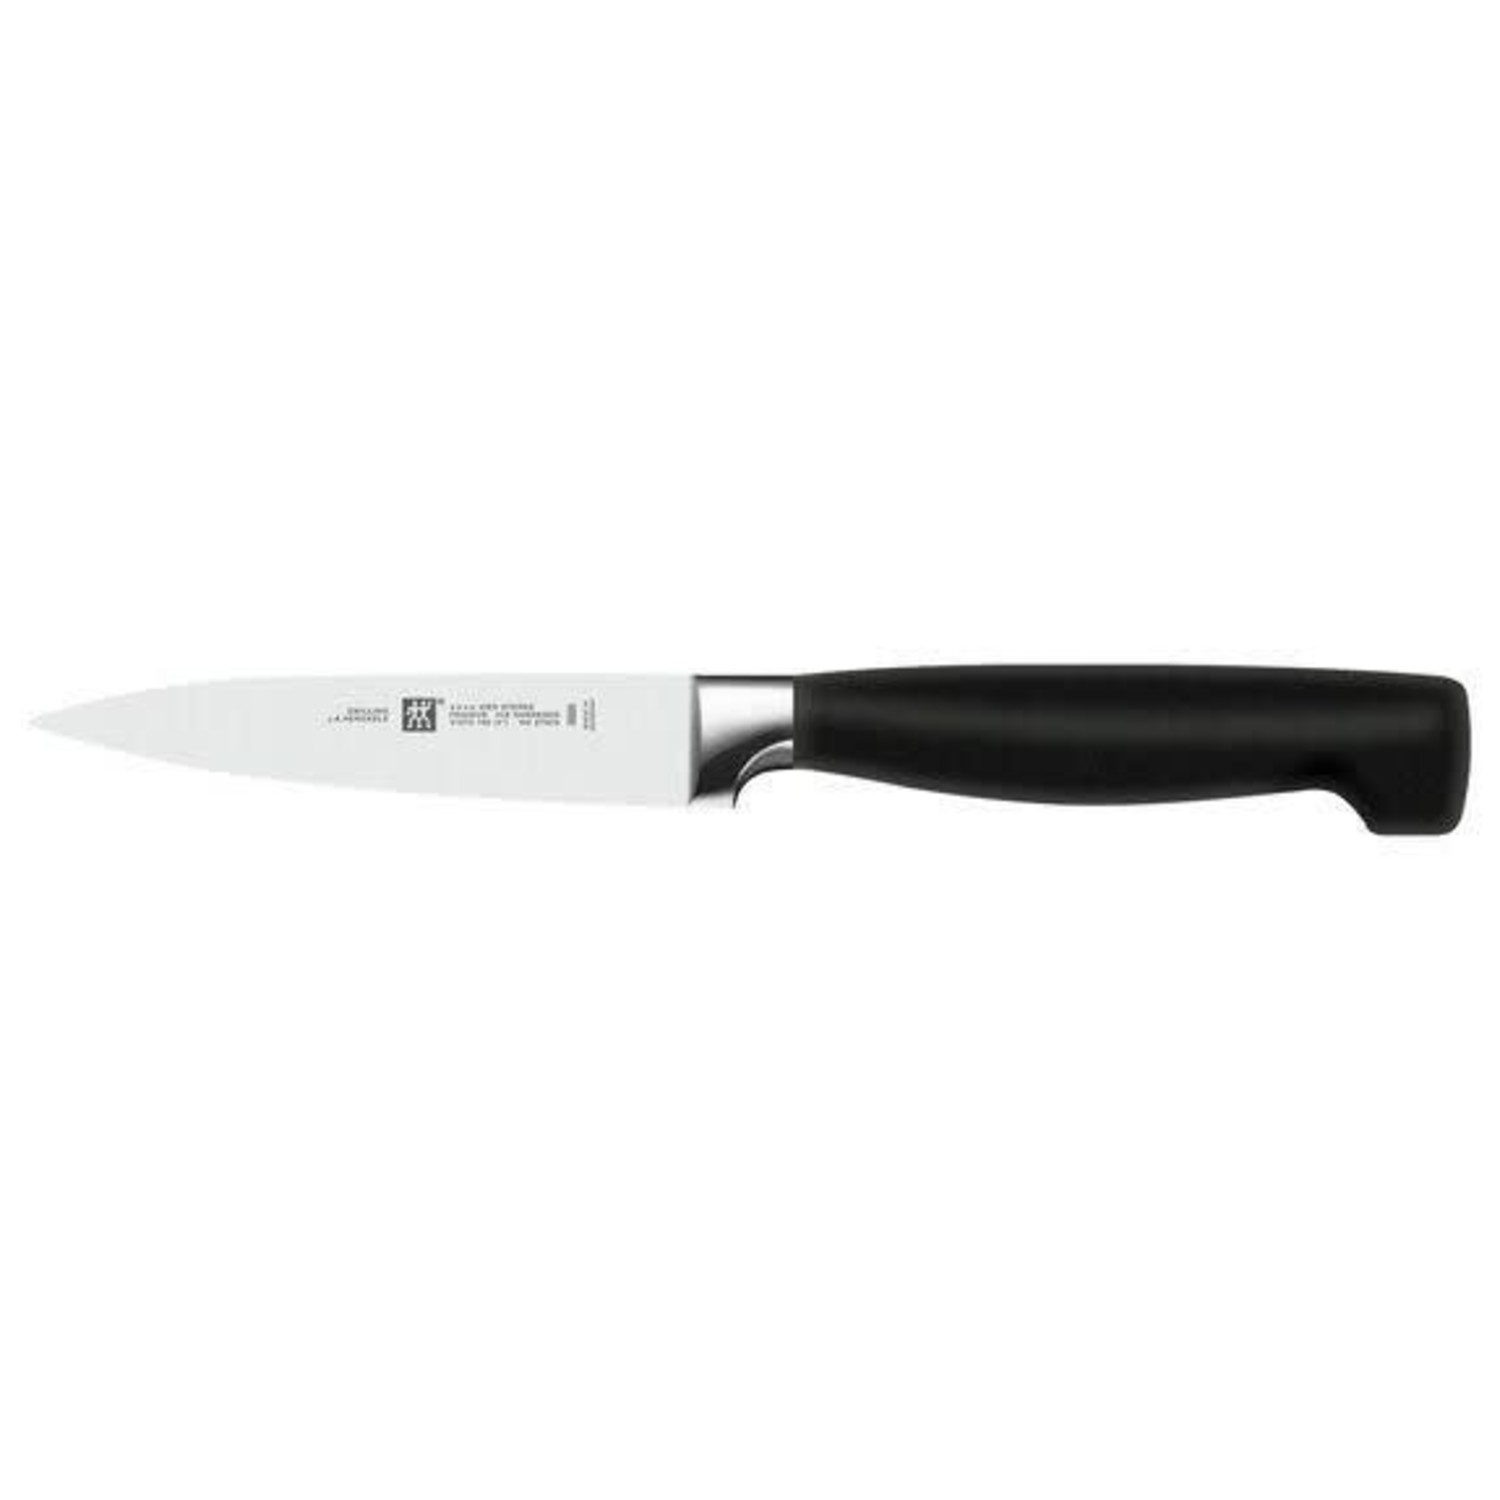 https://cdn.shoplightspeed.com/shops/633447/files/20633991/1500x4000x3/zwilling-ja-henckels-henckels-4-paring-knife.jpg